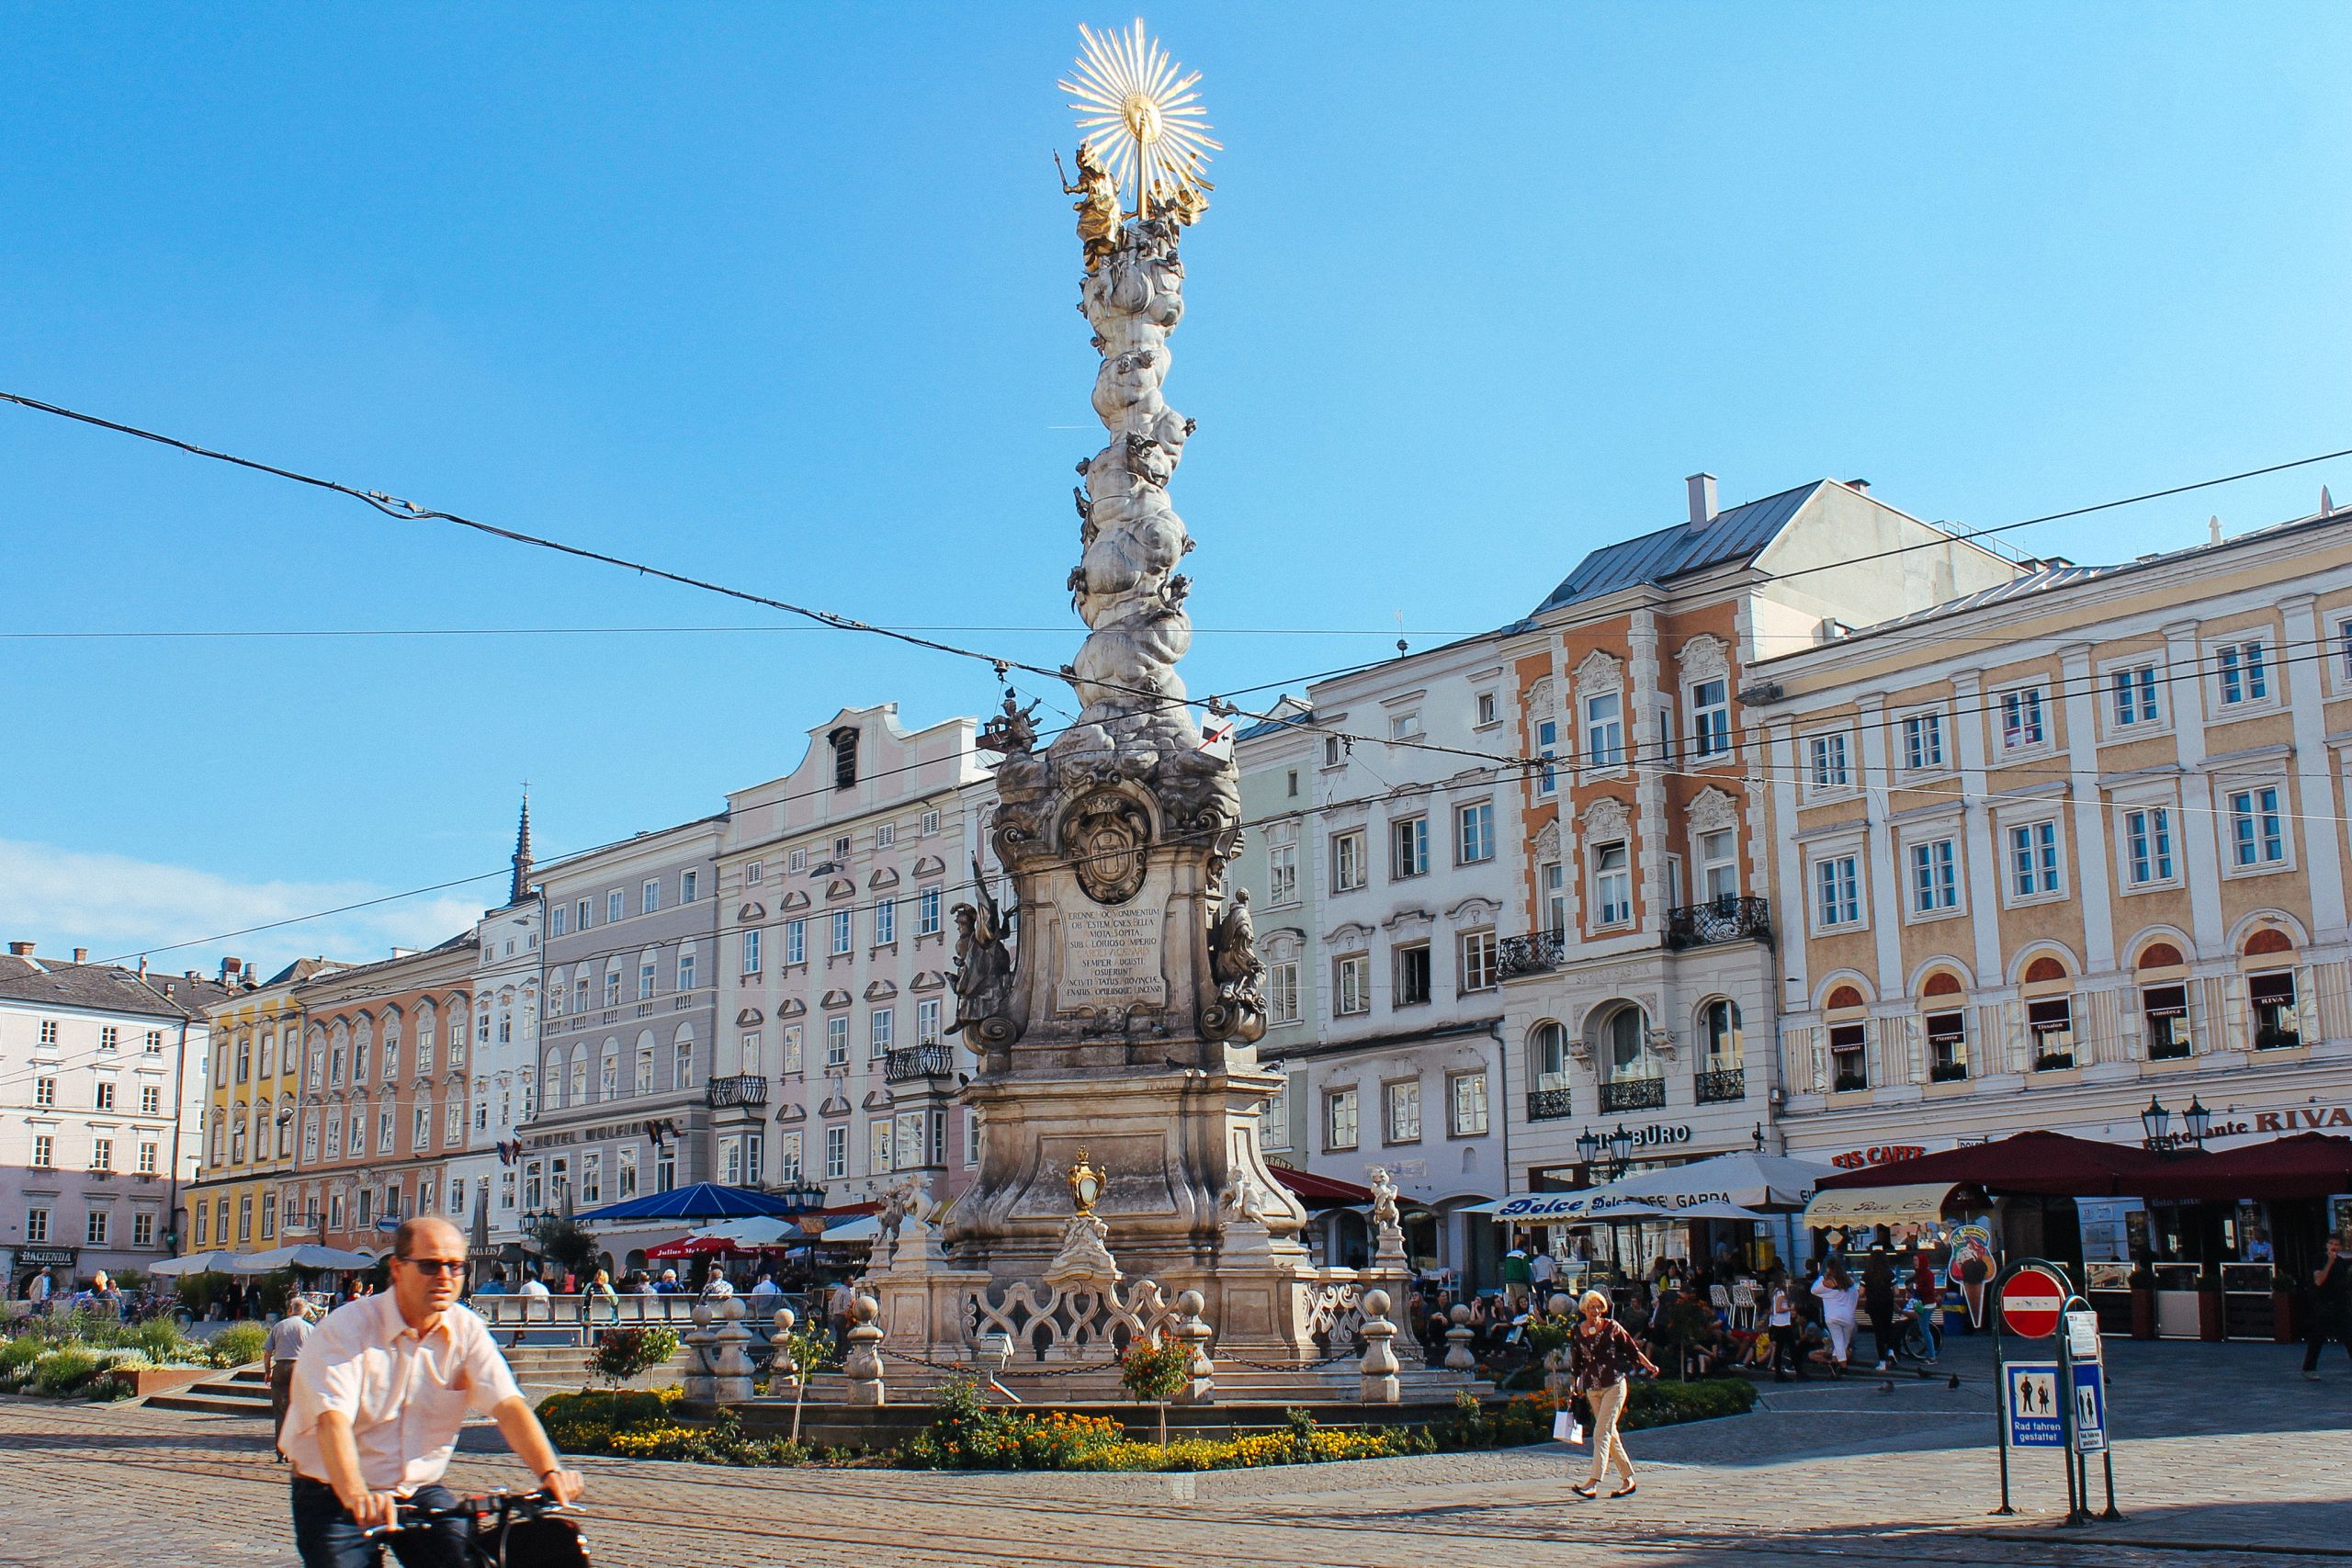 Piazza principale del centro storico di Linz, fontana, negozi, persone a passeggio e in bici, Austria